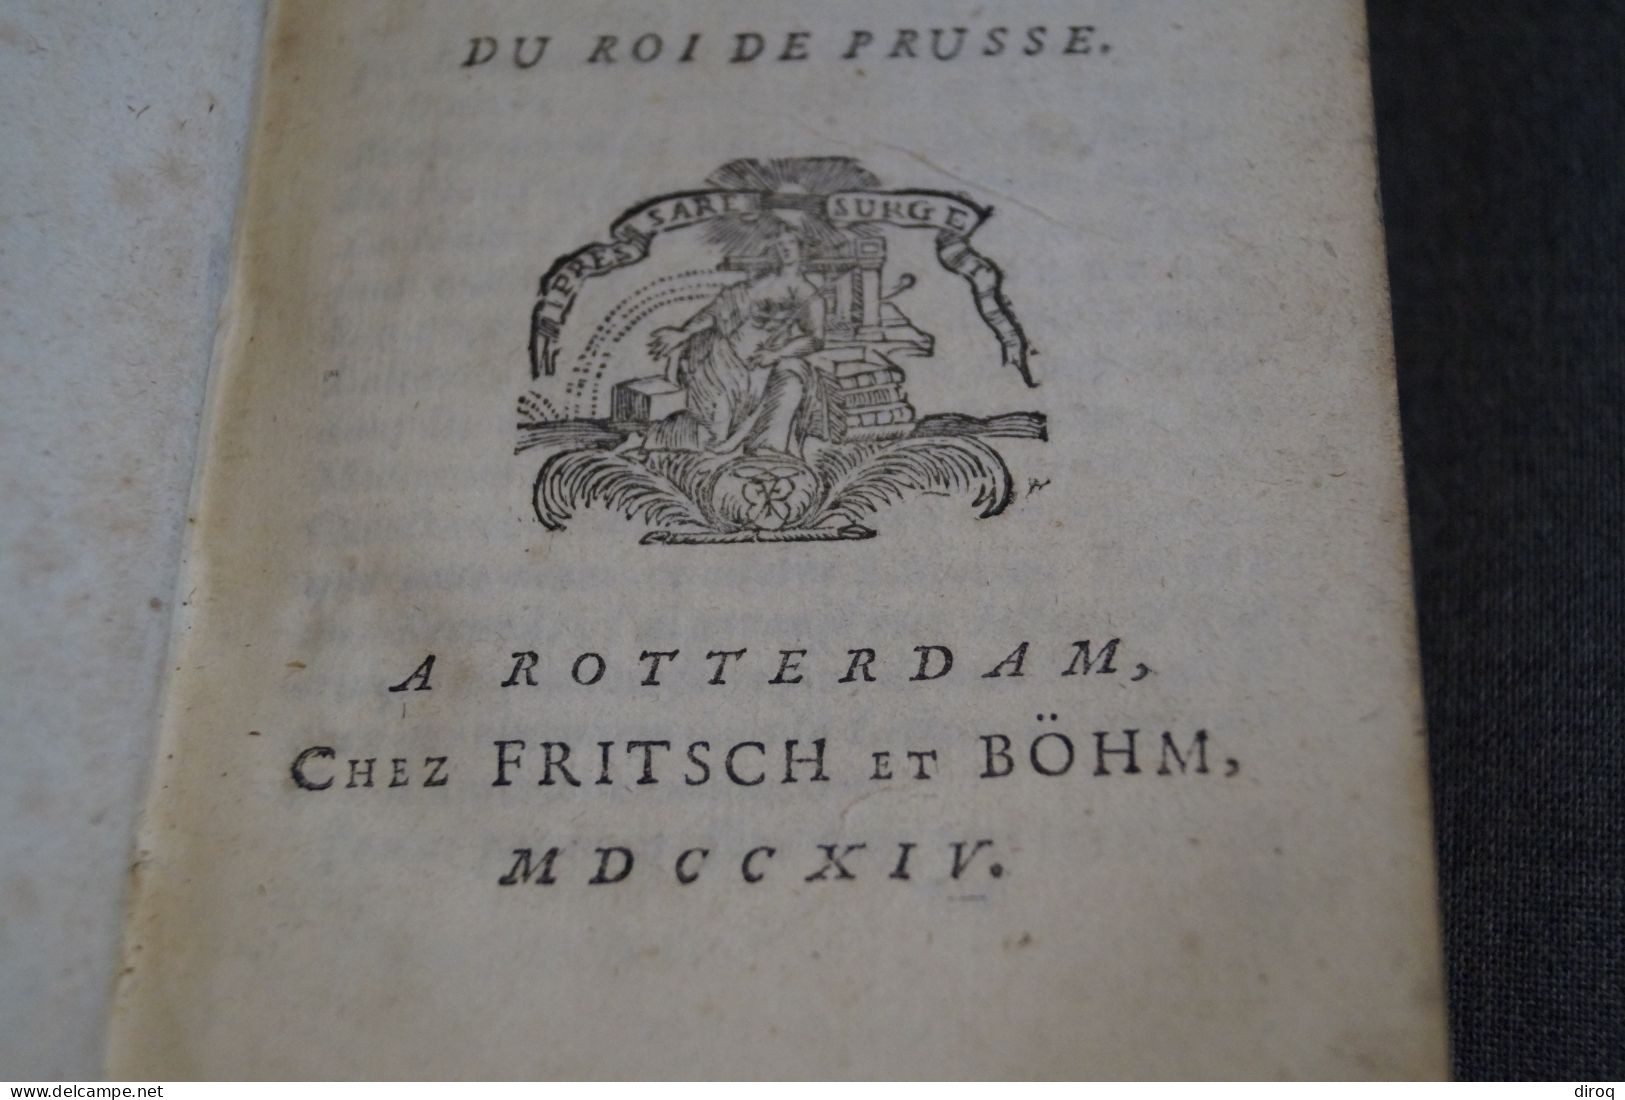 RARE,1714,Histoire Des Sept Sages,Par Me. De Larrey,Conseil Du Roi De Prusse,398 Pages + Table,17,5 Cm./10 Cm. - Before 18th Century